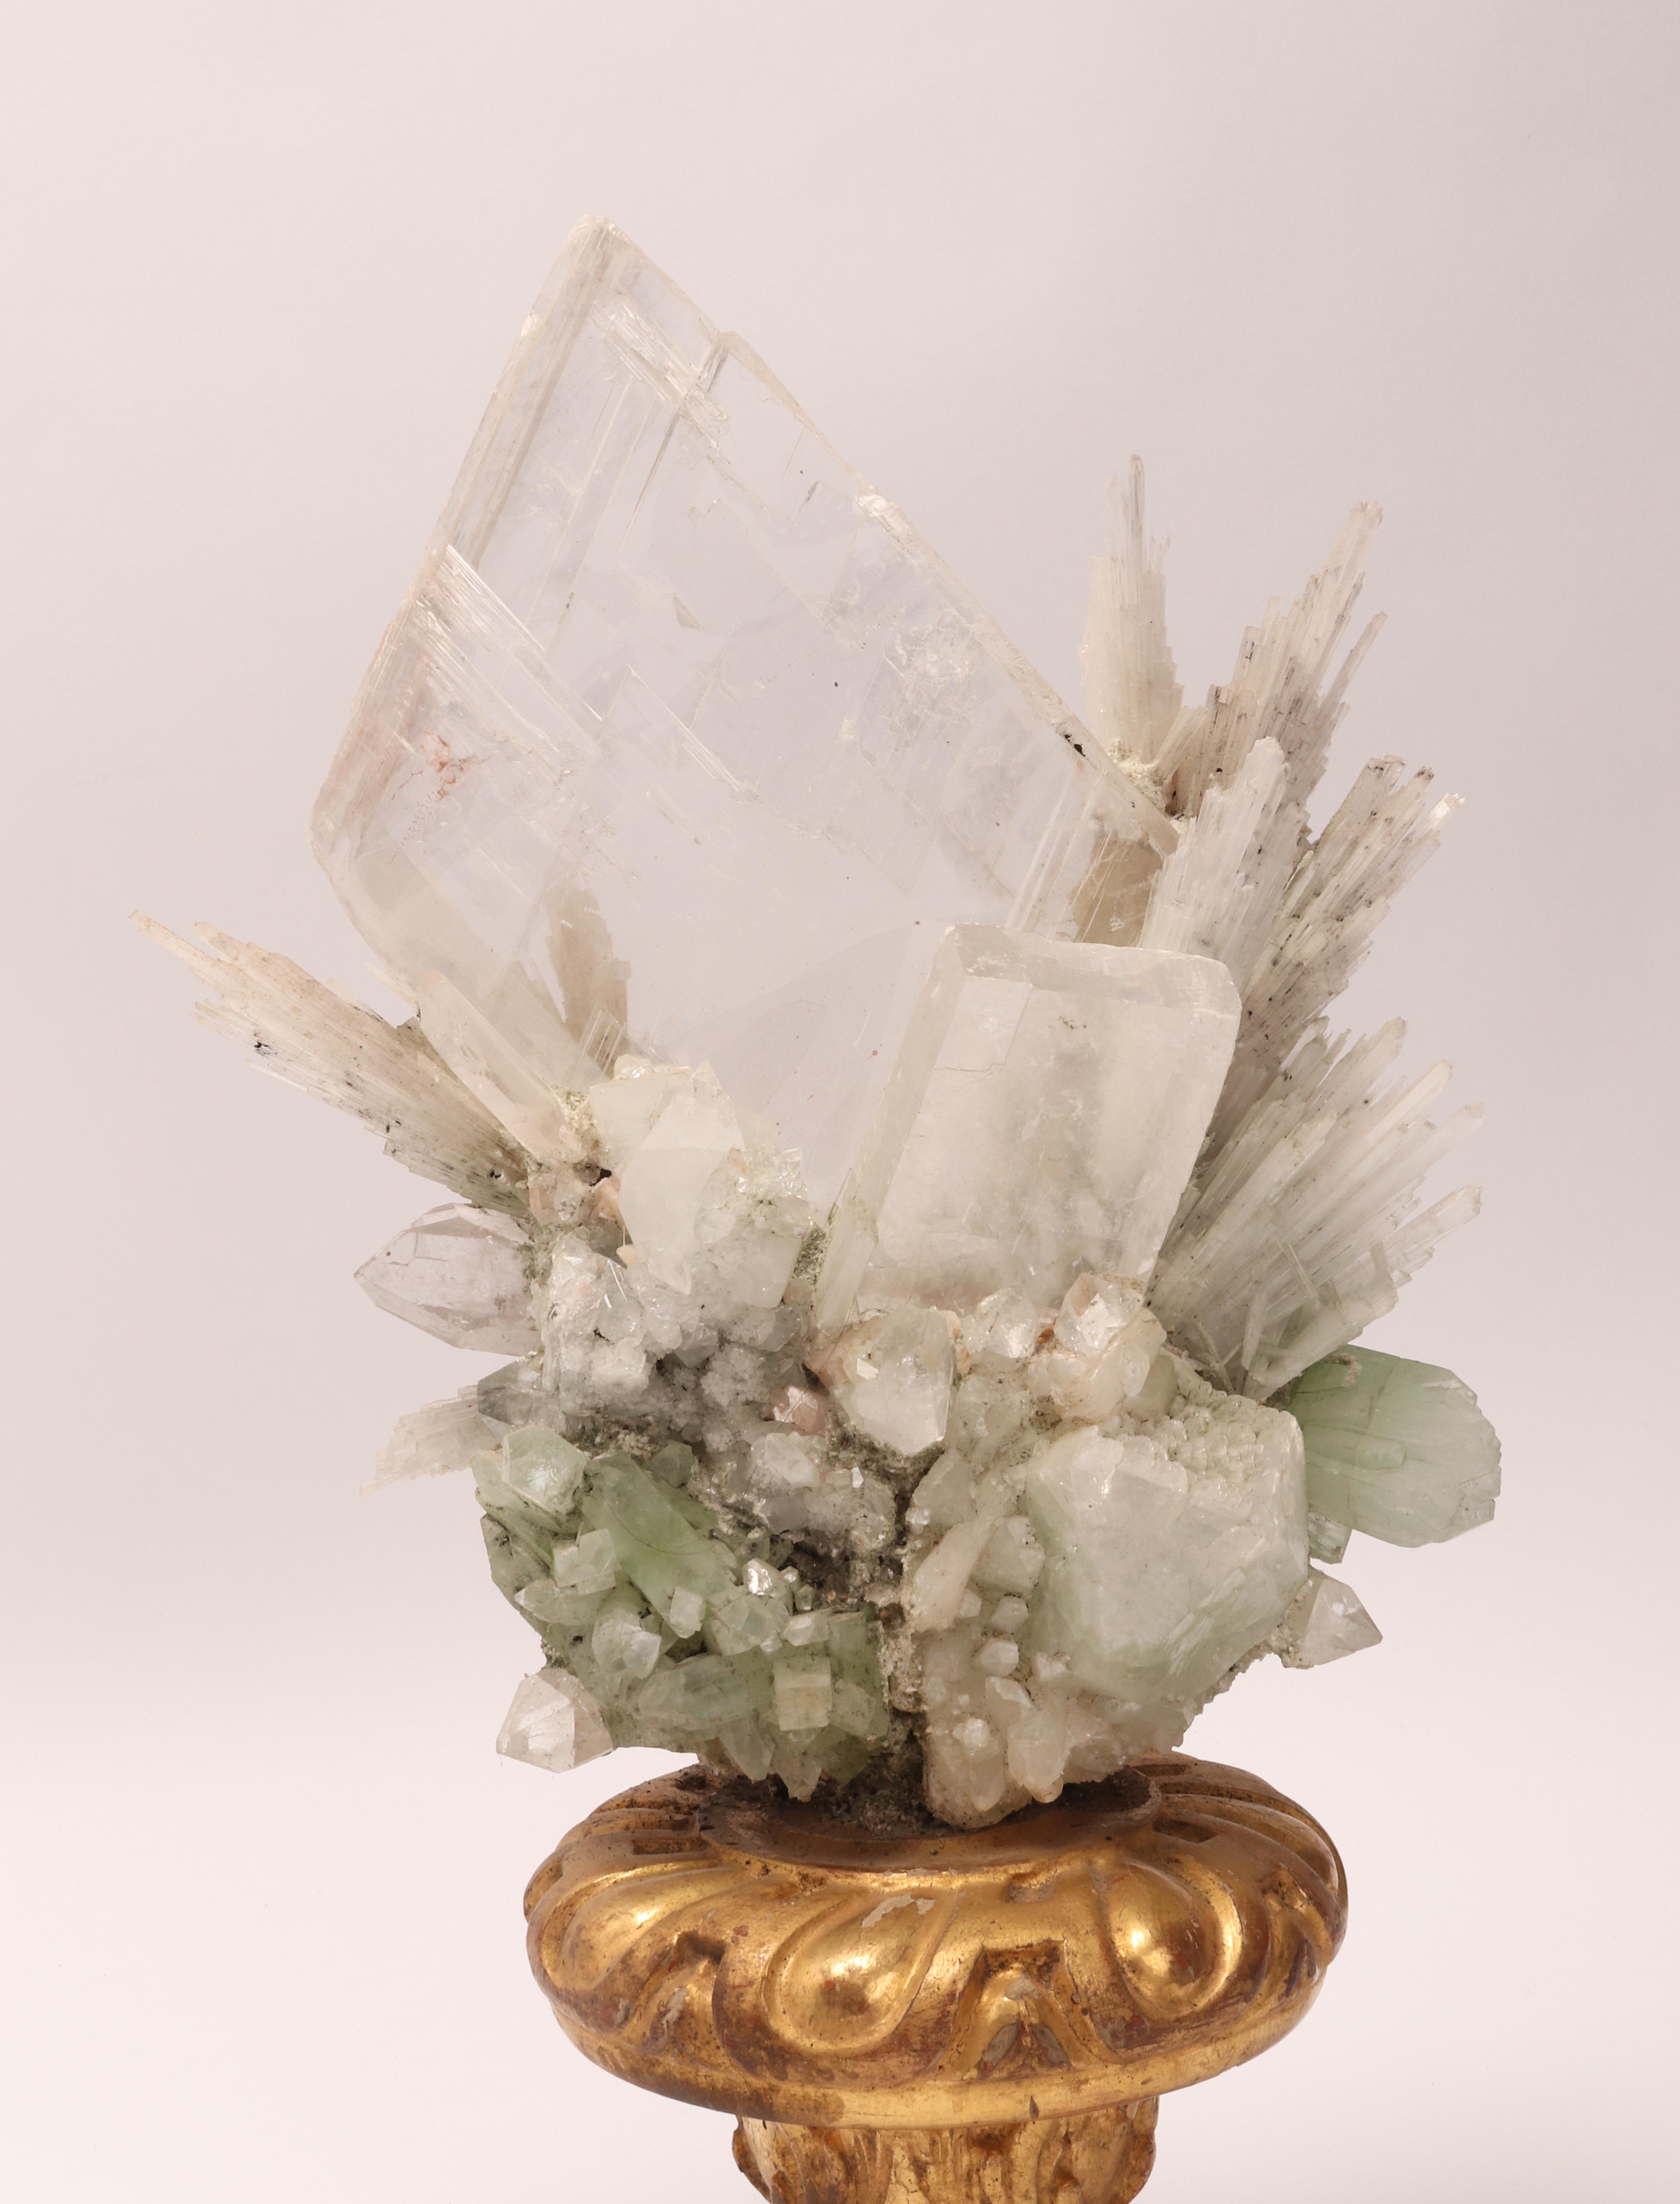 Late 19th Century Natural Specimen Apophilite, Quartz and Calcite Flowers Crystals, Italy 1880